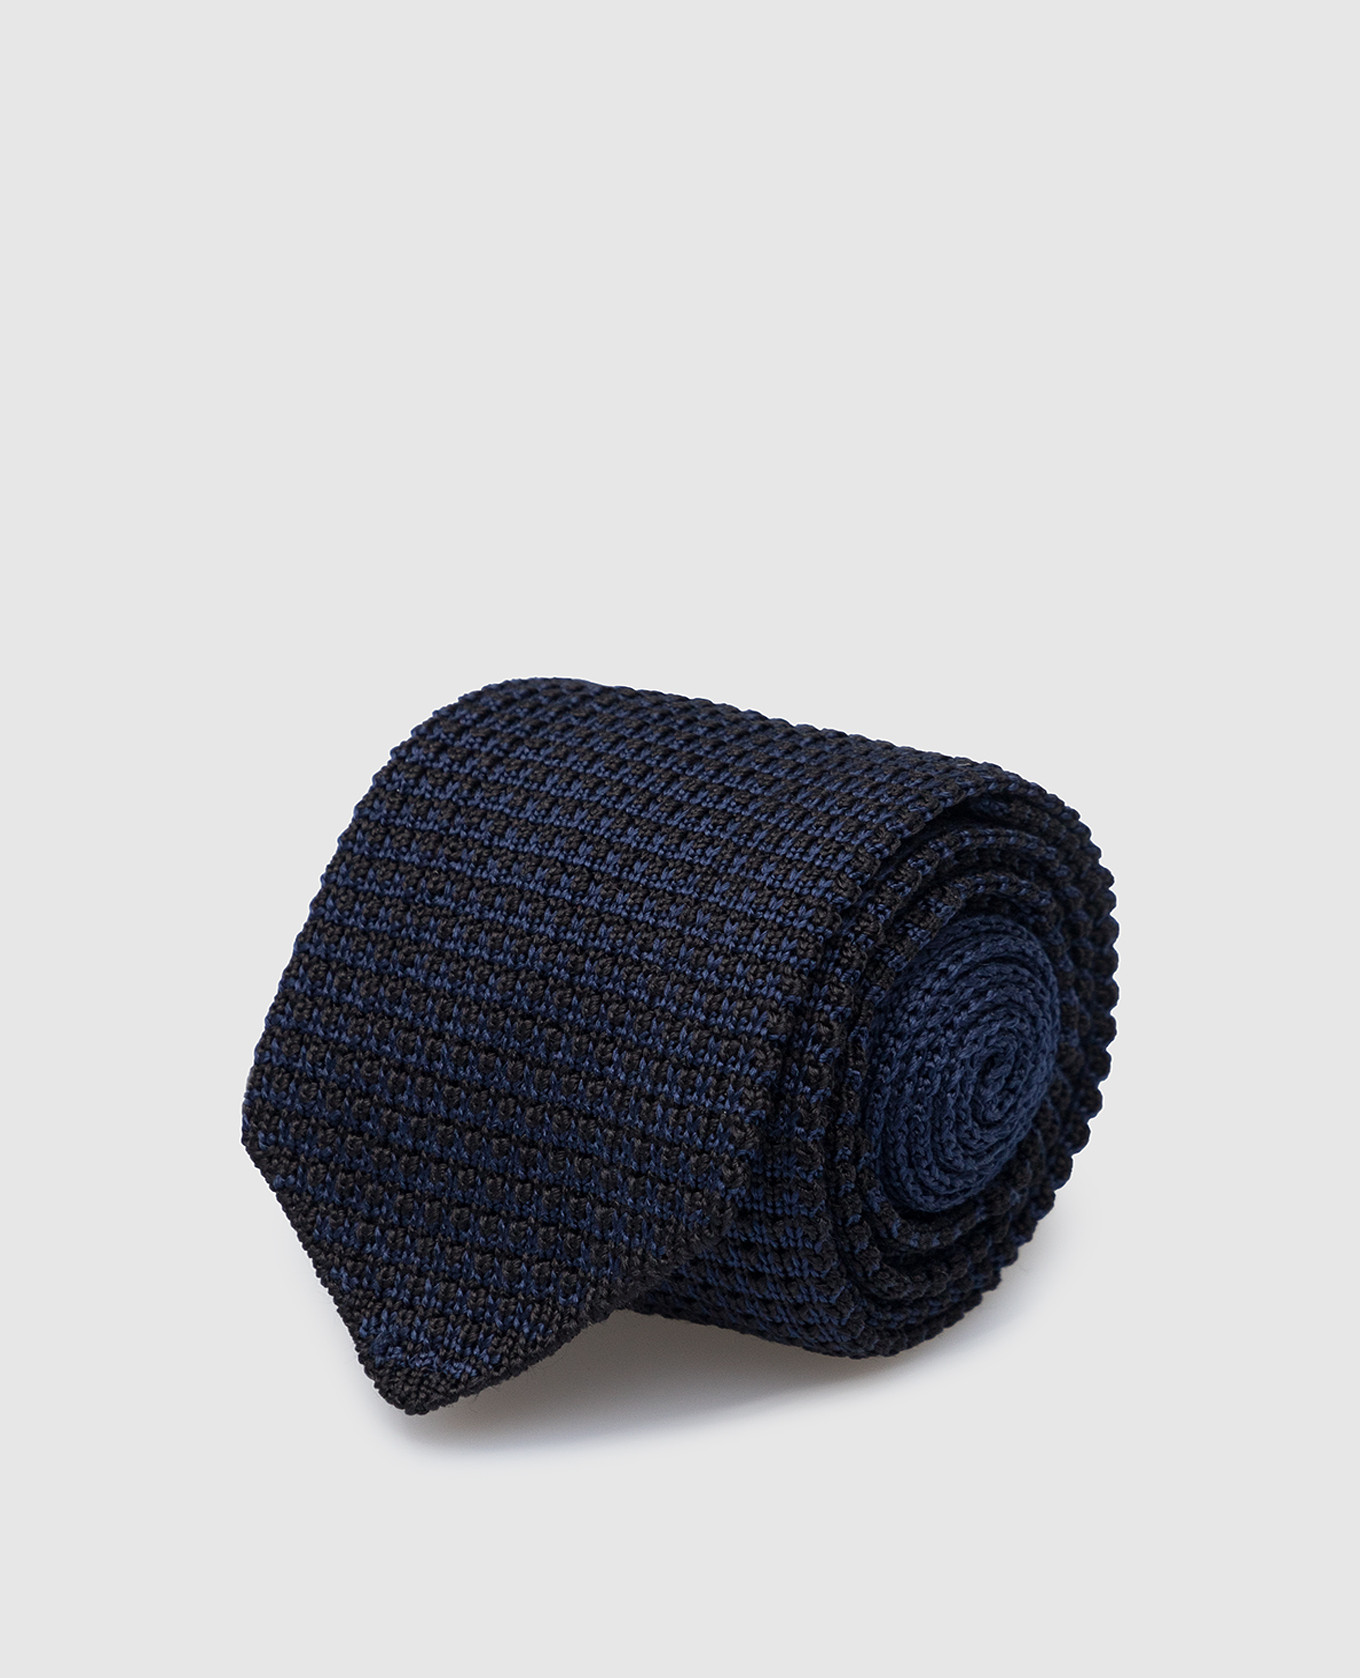 Children's black silk tie